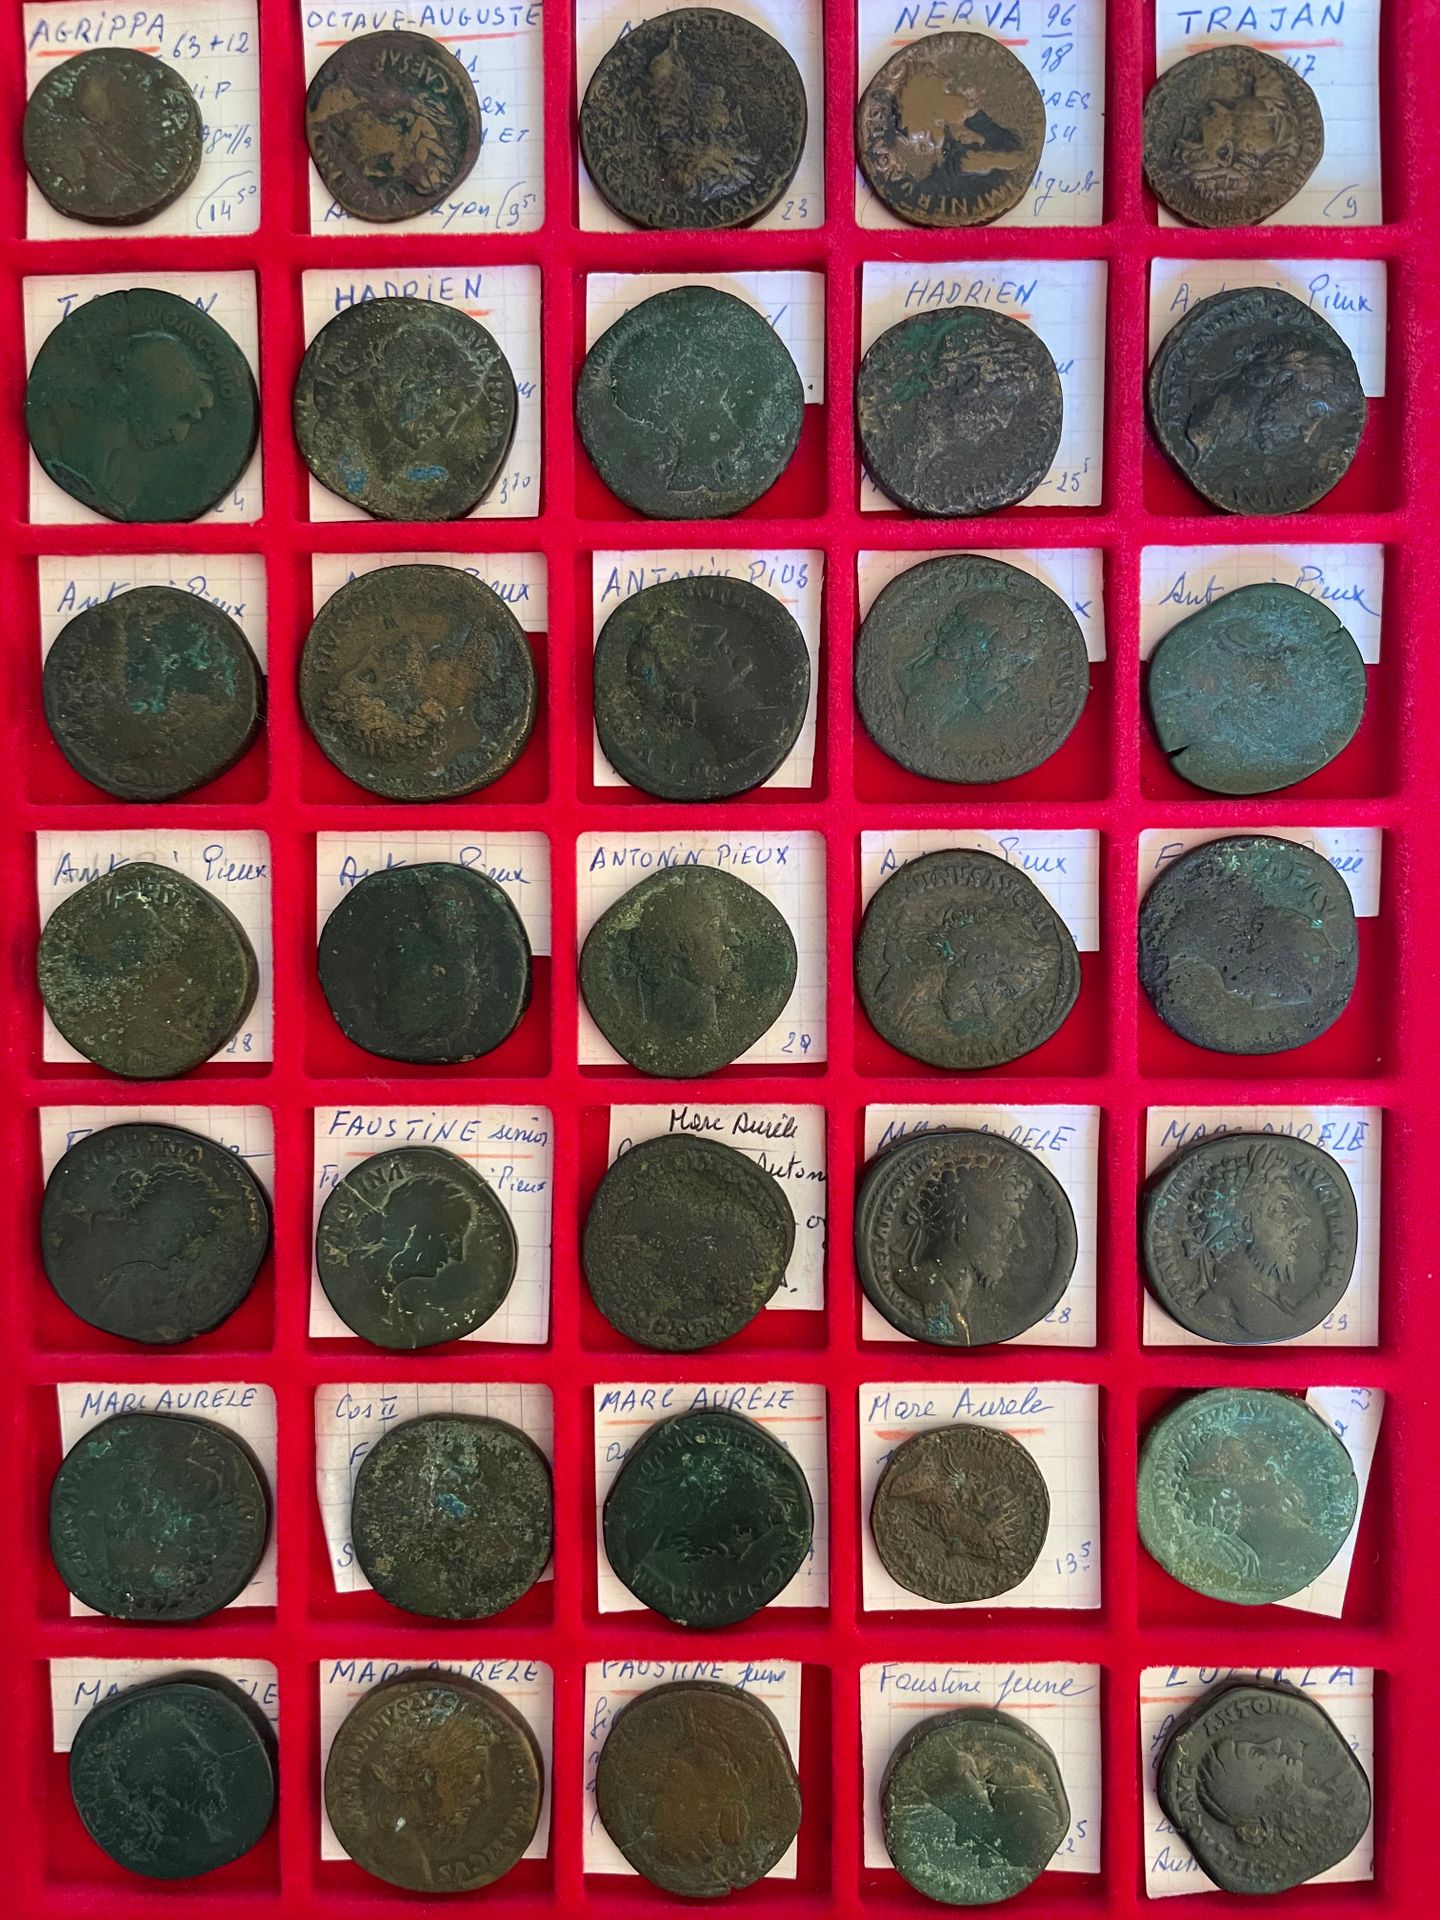 Null 罗马帝国。
托盘里有35枚罗马铜币：阿格里帕的王牌和屋大维的王牌以及从尼禄到卢西拉的各种塞斯特币。
棕色或绿色铜锈。B/TB